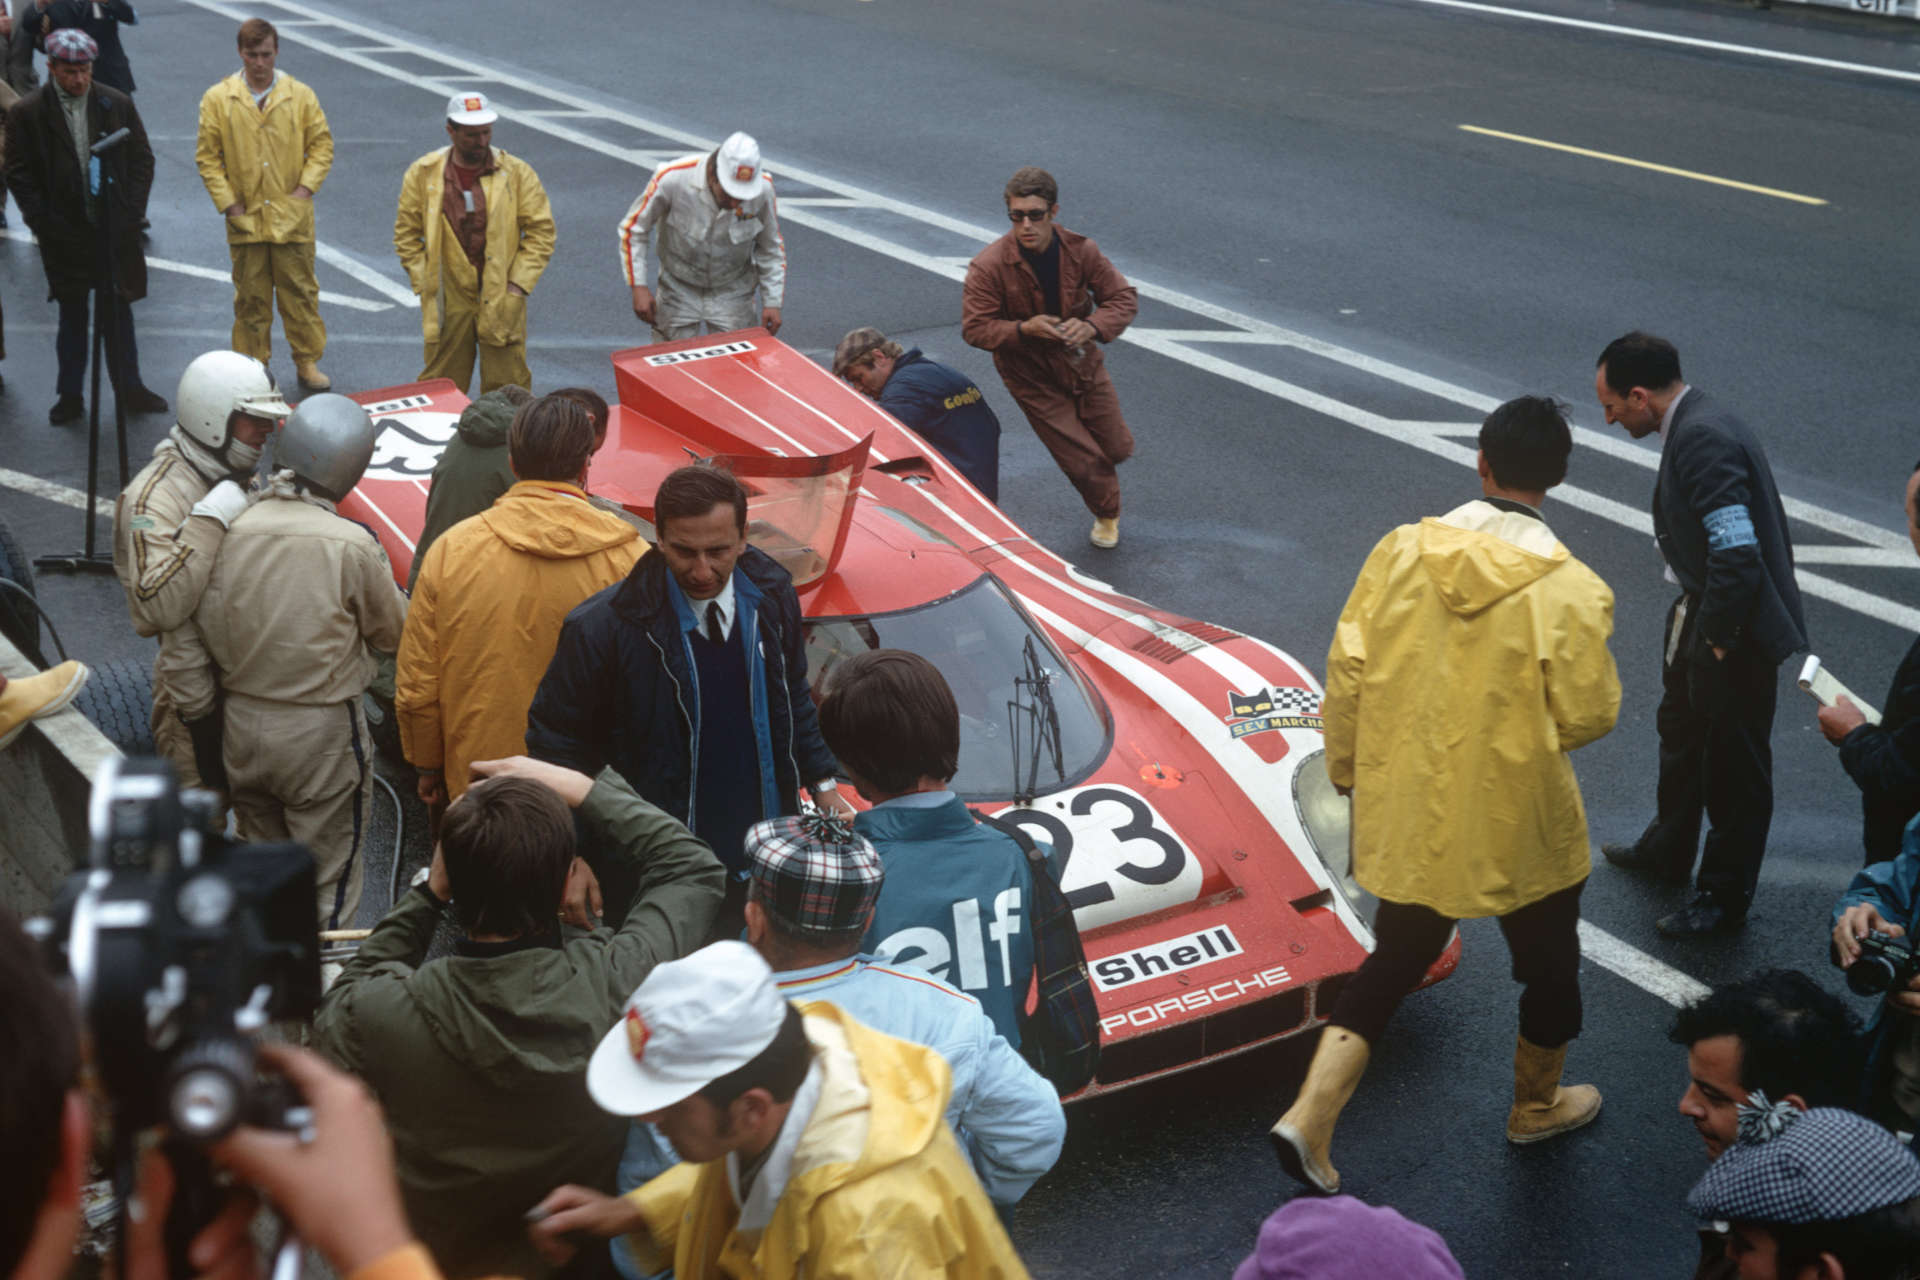 Le Mans 1970